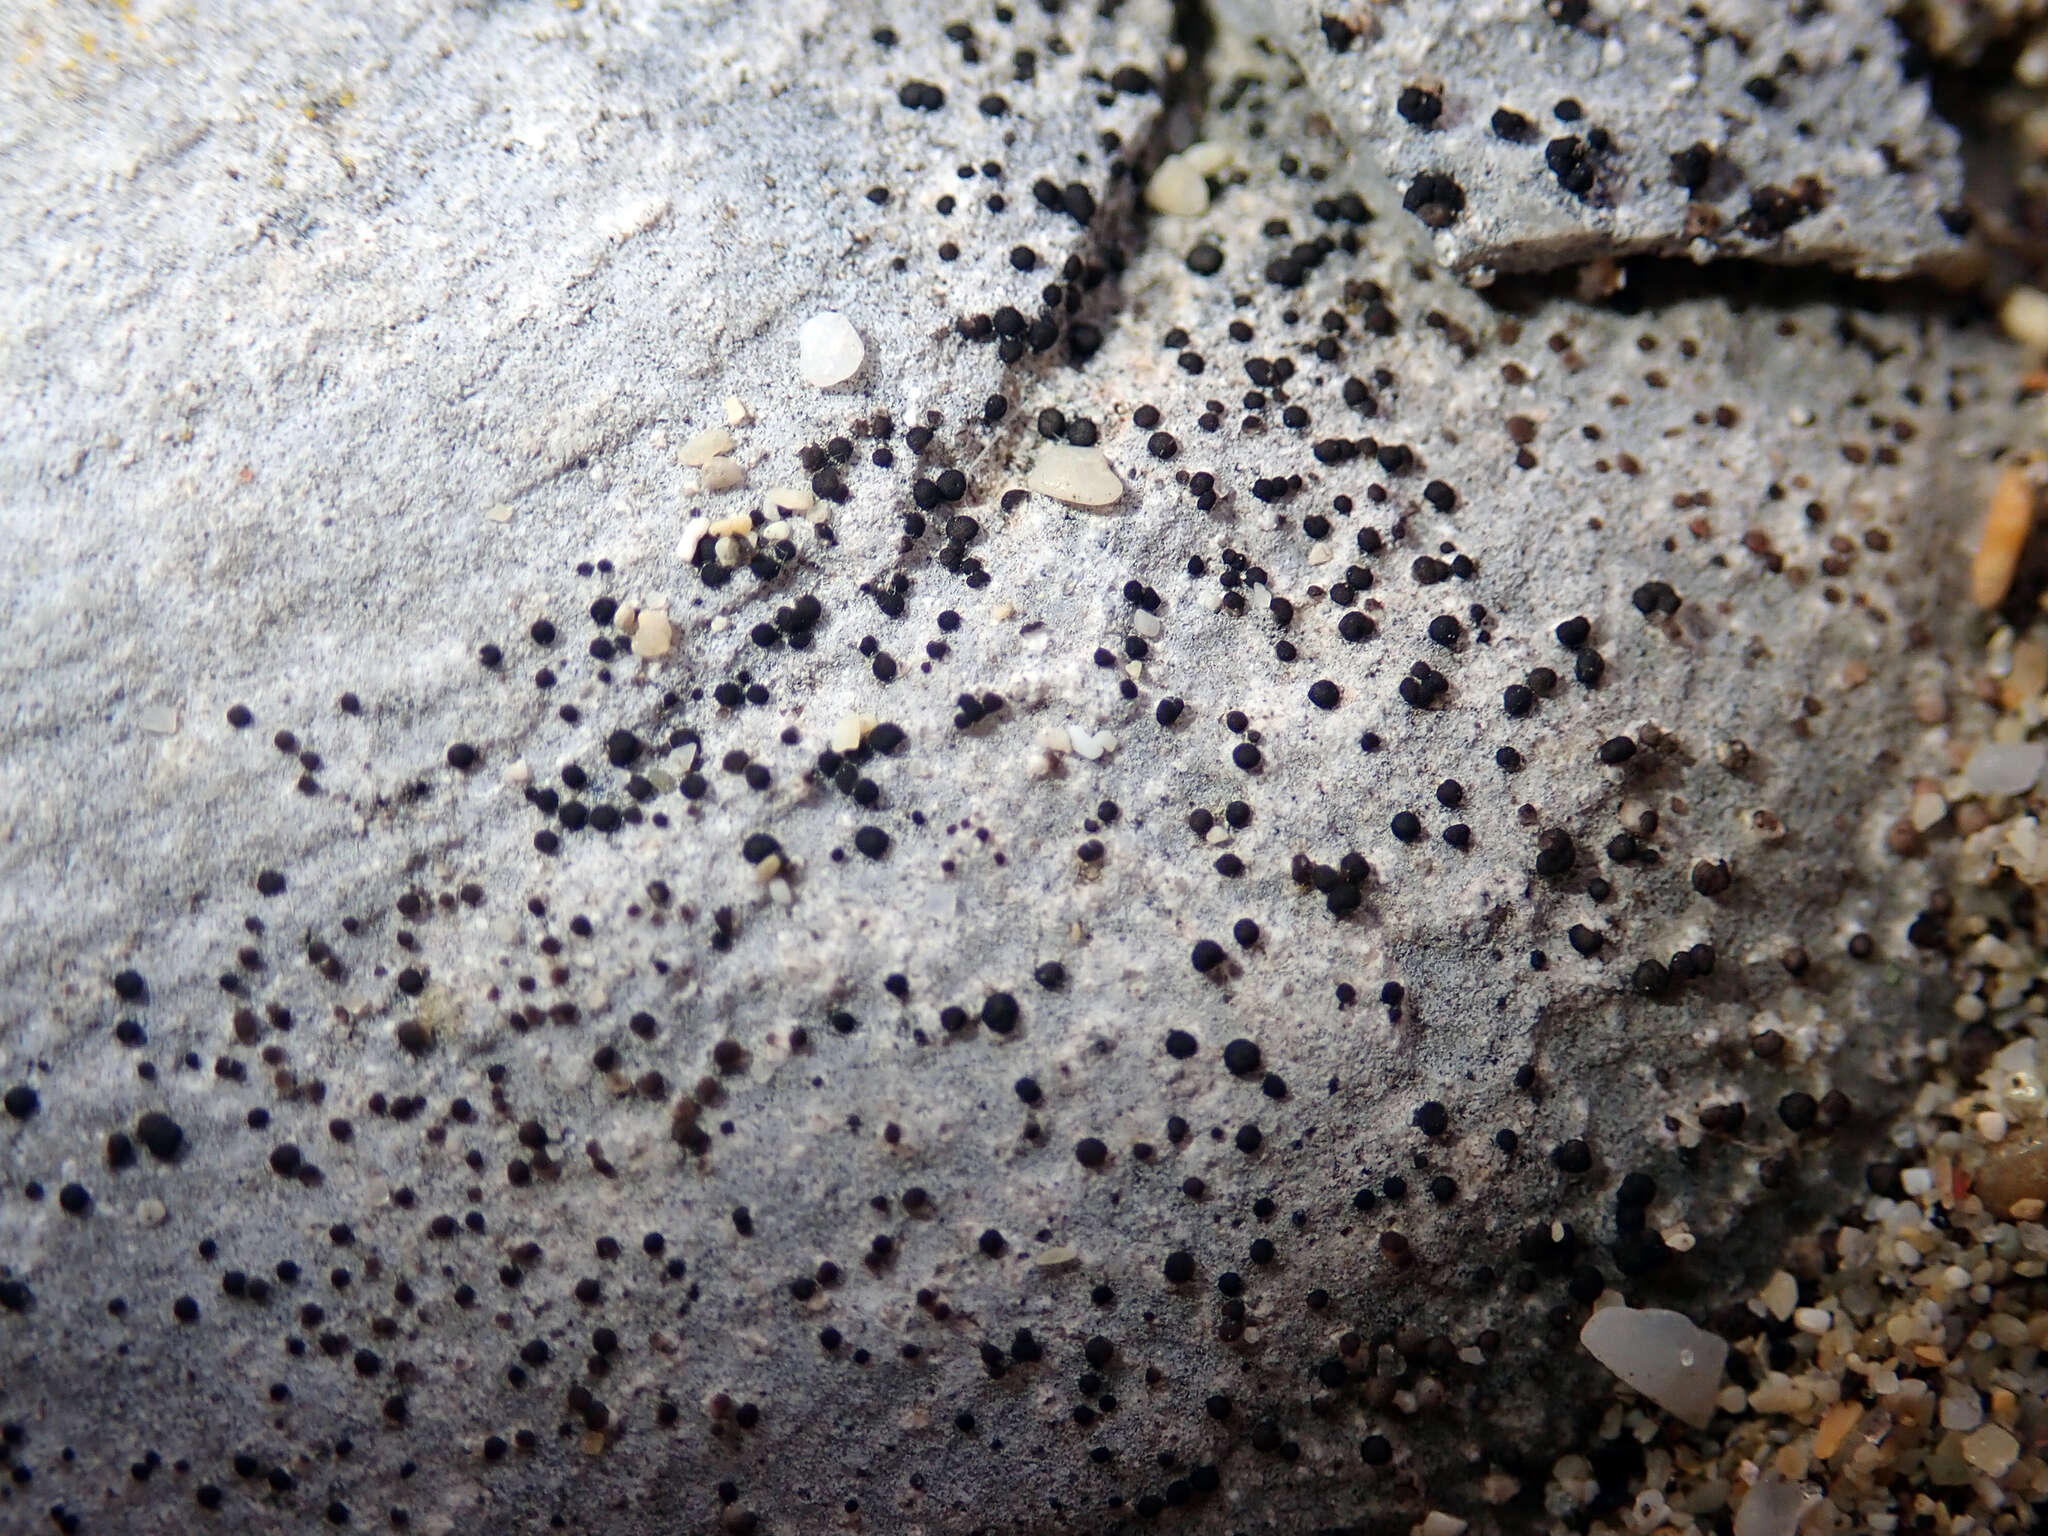 Image of Catillaria glaucogrisea Fryday